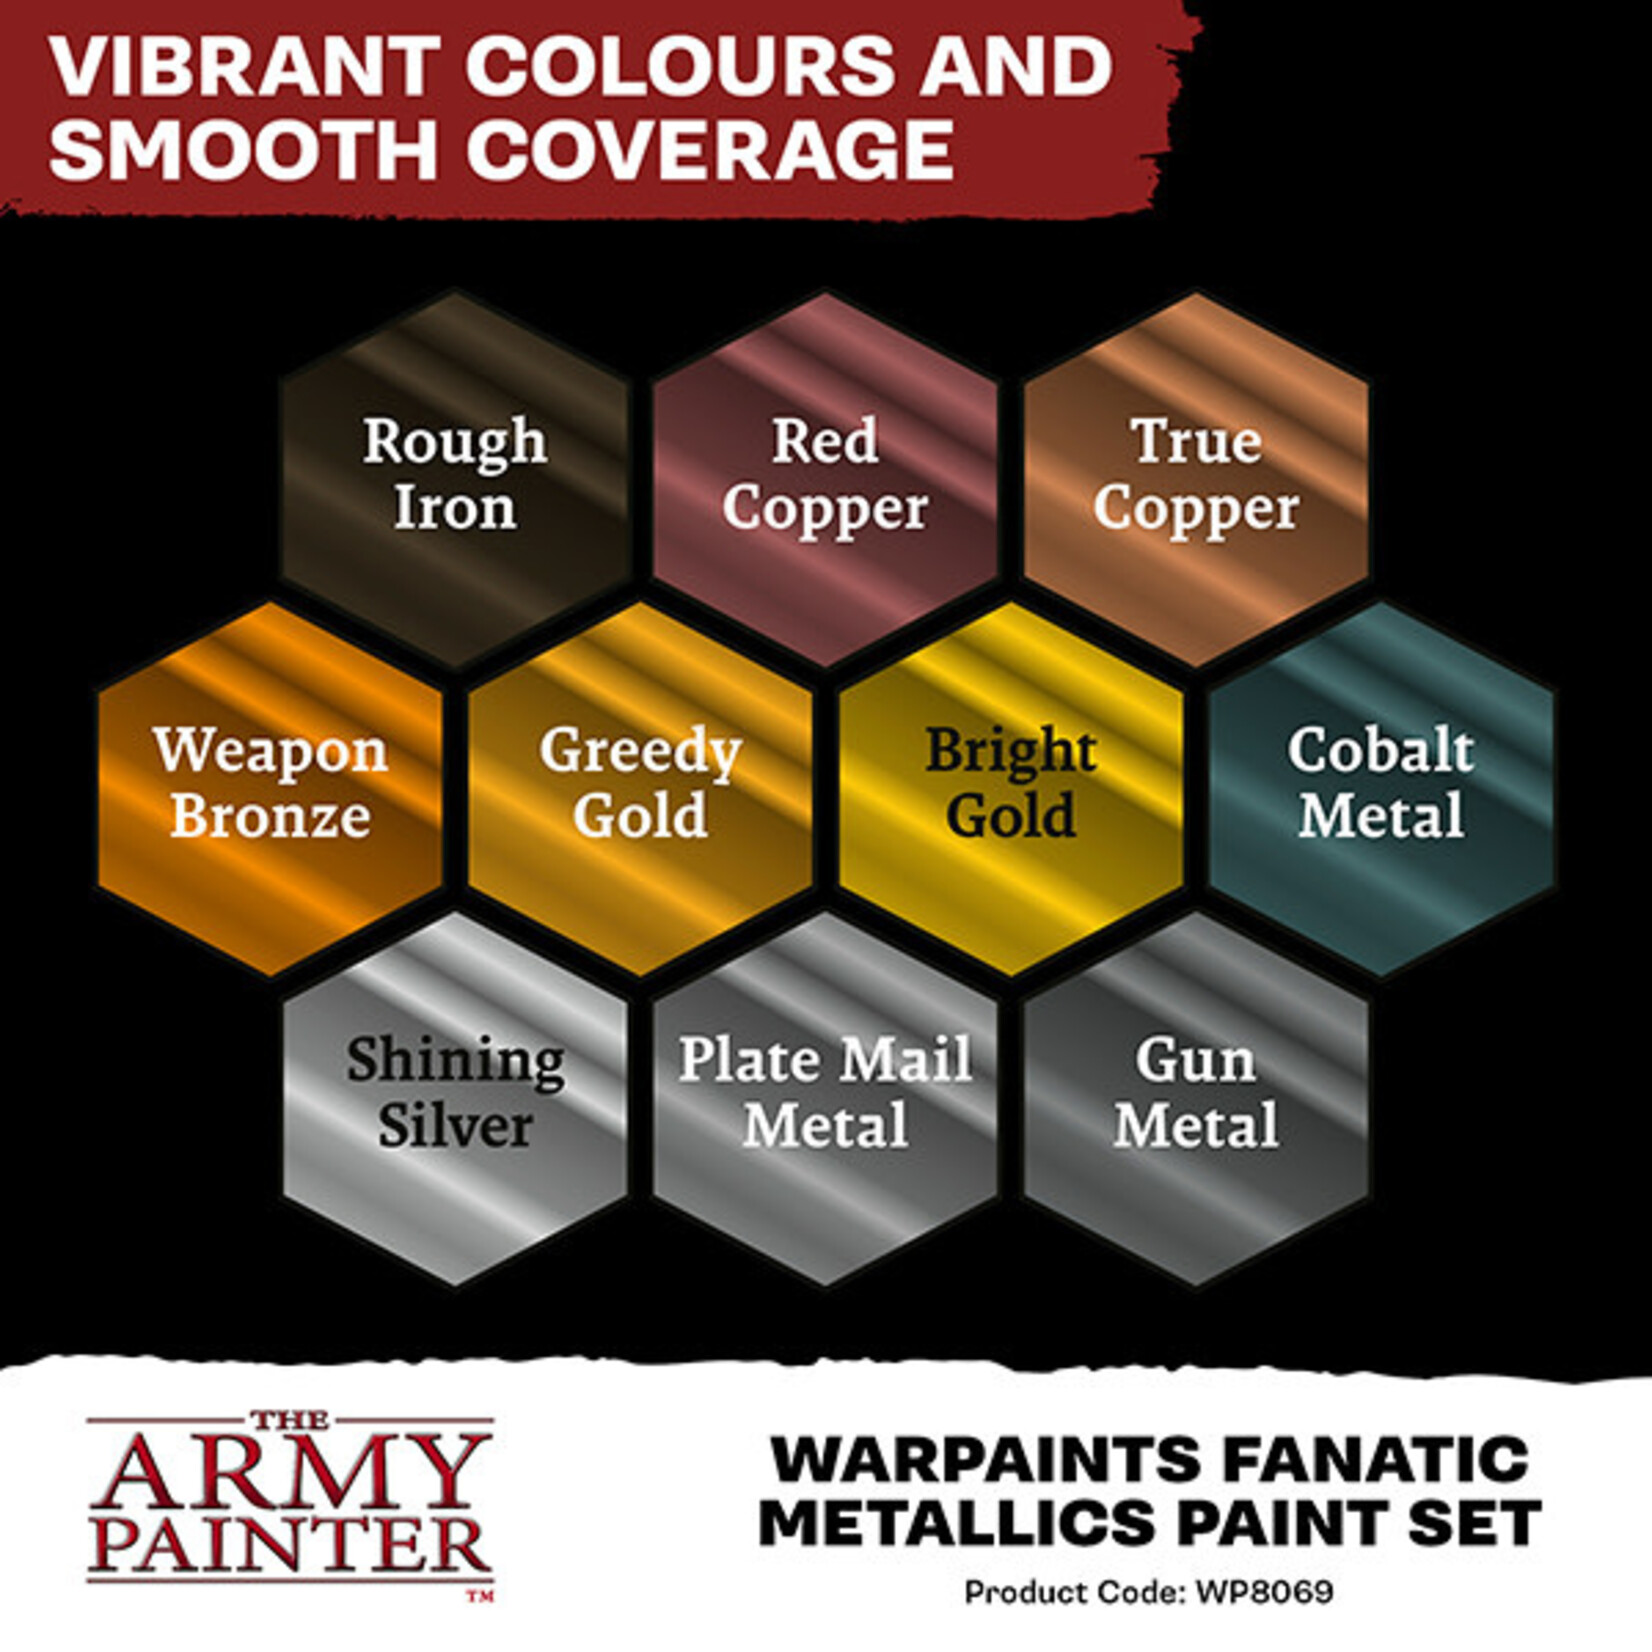 The Army Painter Warpaint Fanatic - Metallics Paint Set